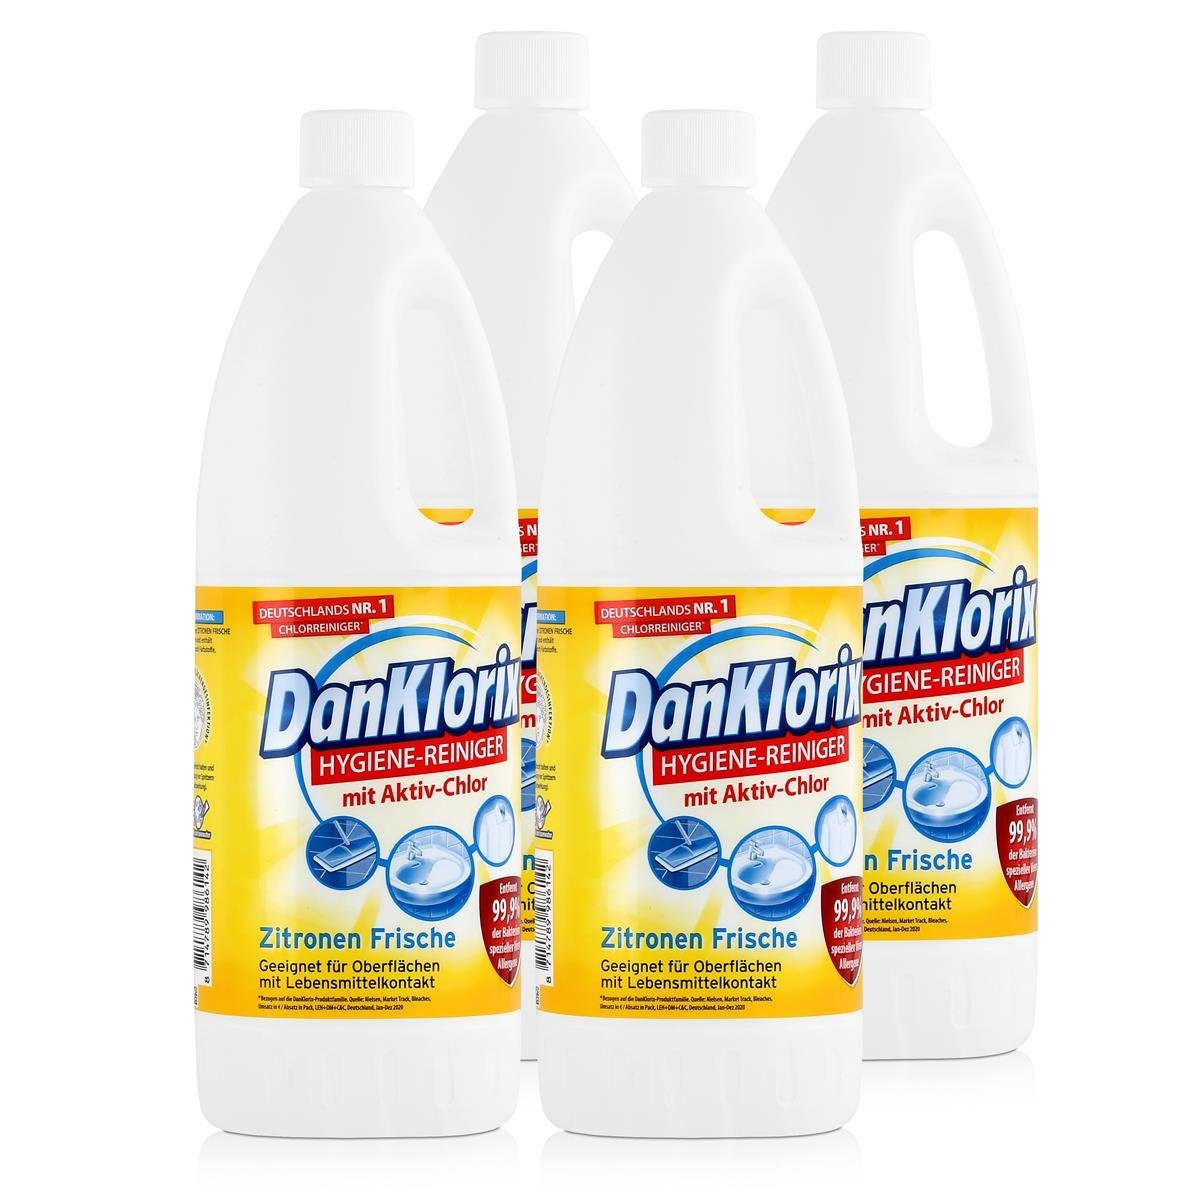 DanKlorix DanKlorix Hygiene-Reiniger Zitronen Frische 1,5L – Mit Aktiv-Chlor (4e WC-Reiniger